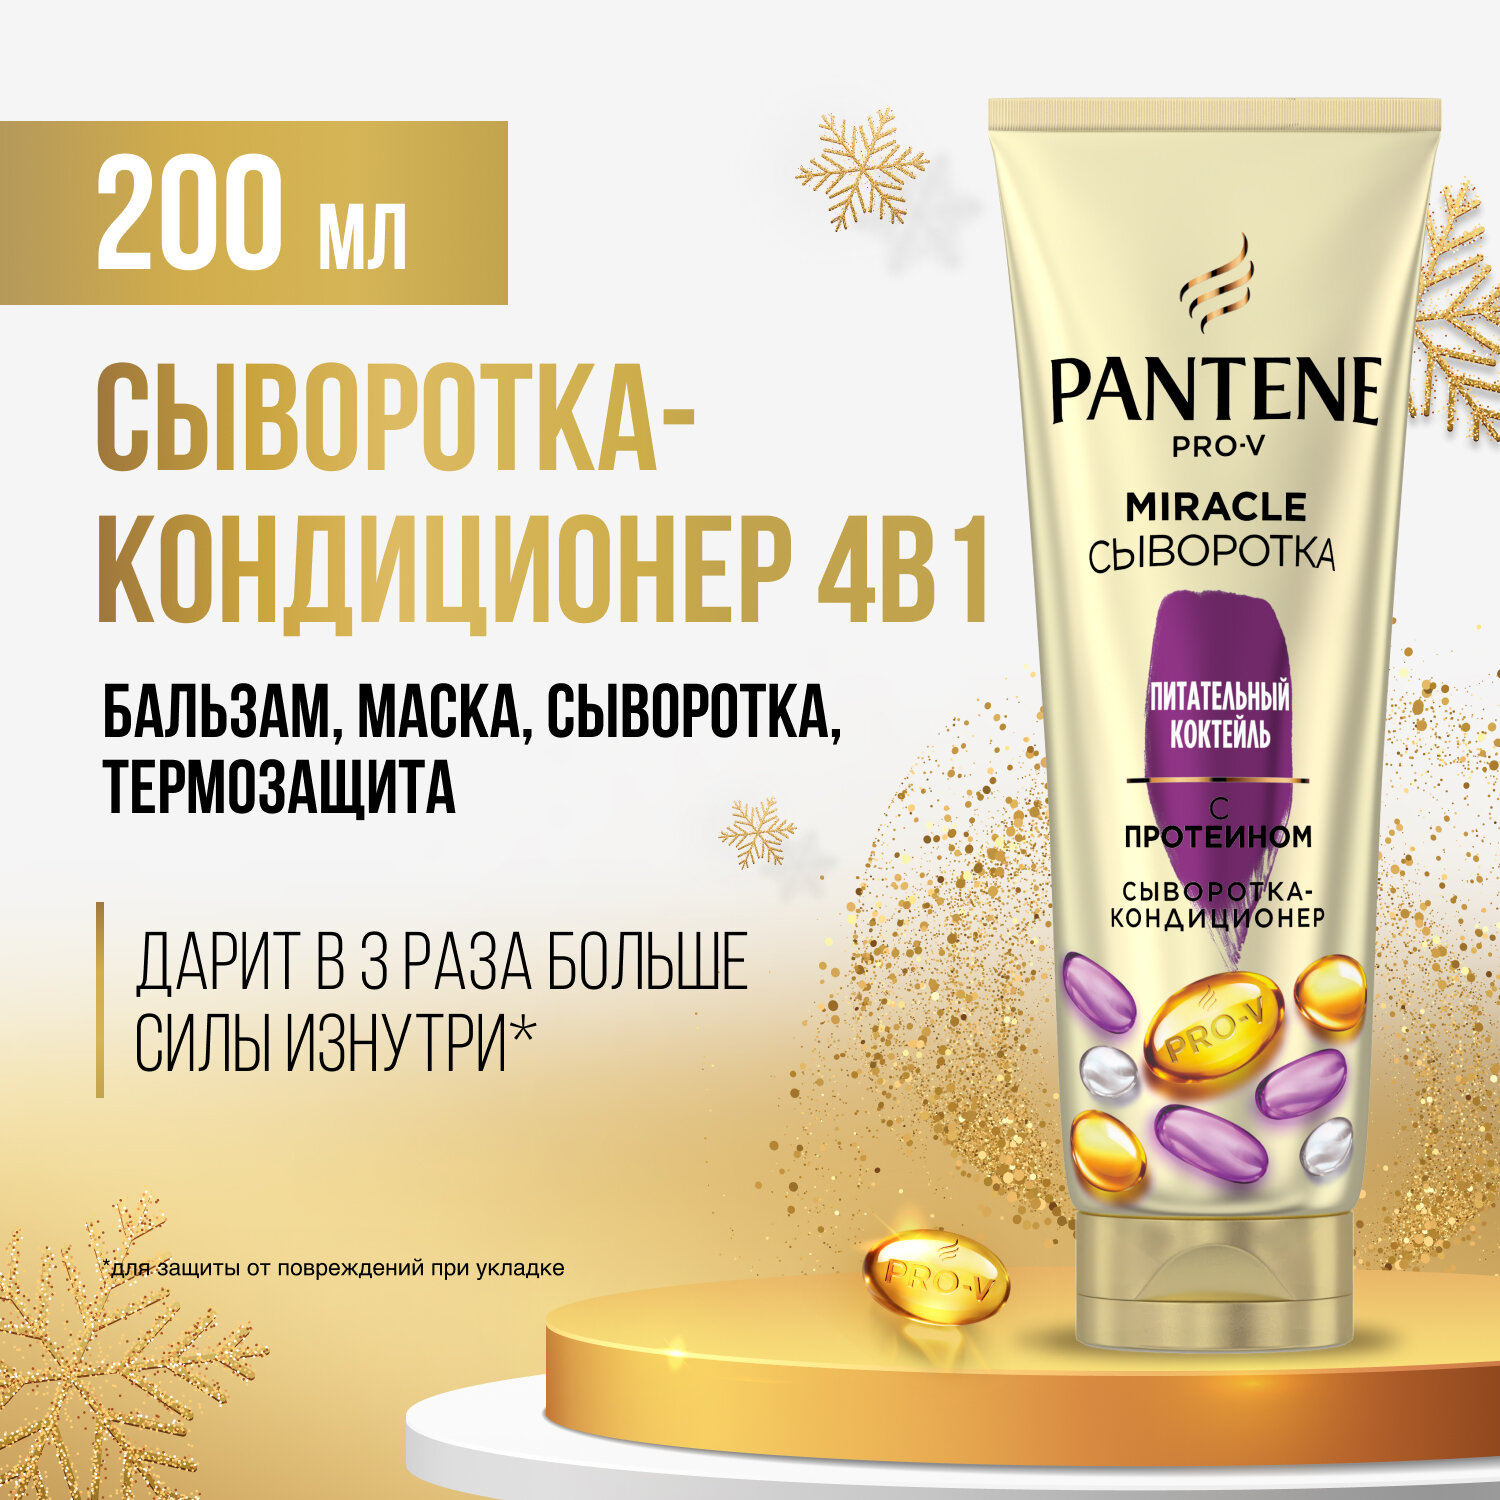 Сыворотка-кондиционер для волос Pantene 4в1 Miracle Питательный Коктейль, 200 мл - фото №2